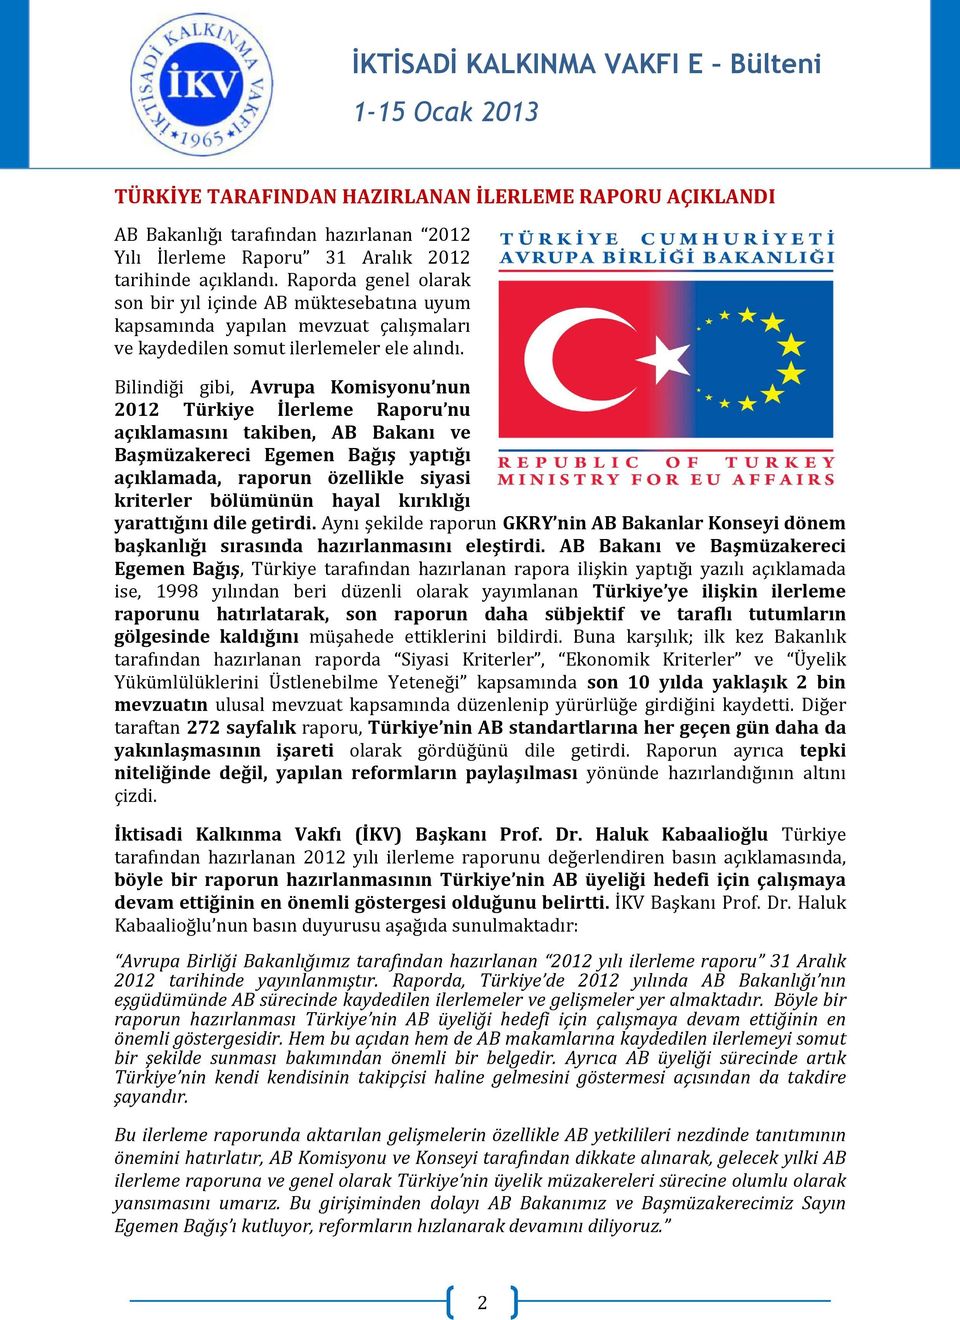 Bilindiği gibi, Avrupa Komisyonu nun 2012 Türkiye İlerleme Raporu nu açıklamasını takiben, AB Bakanı ve Başmüzakereci Egemen Bağış yaptığı açıklamada, raporun özellikle siyasi kriterler bölümünün